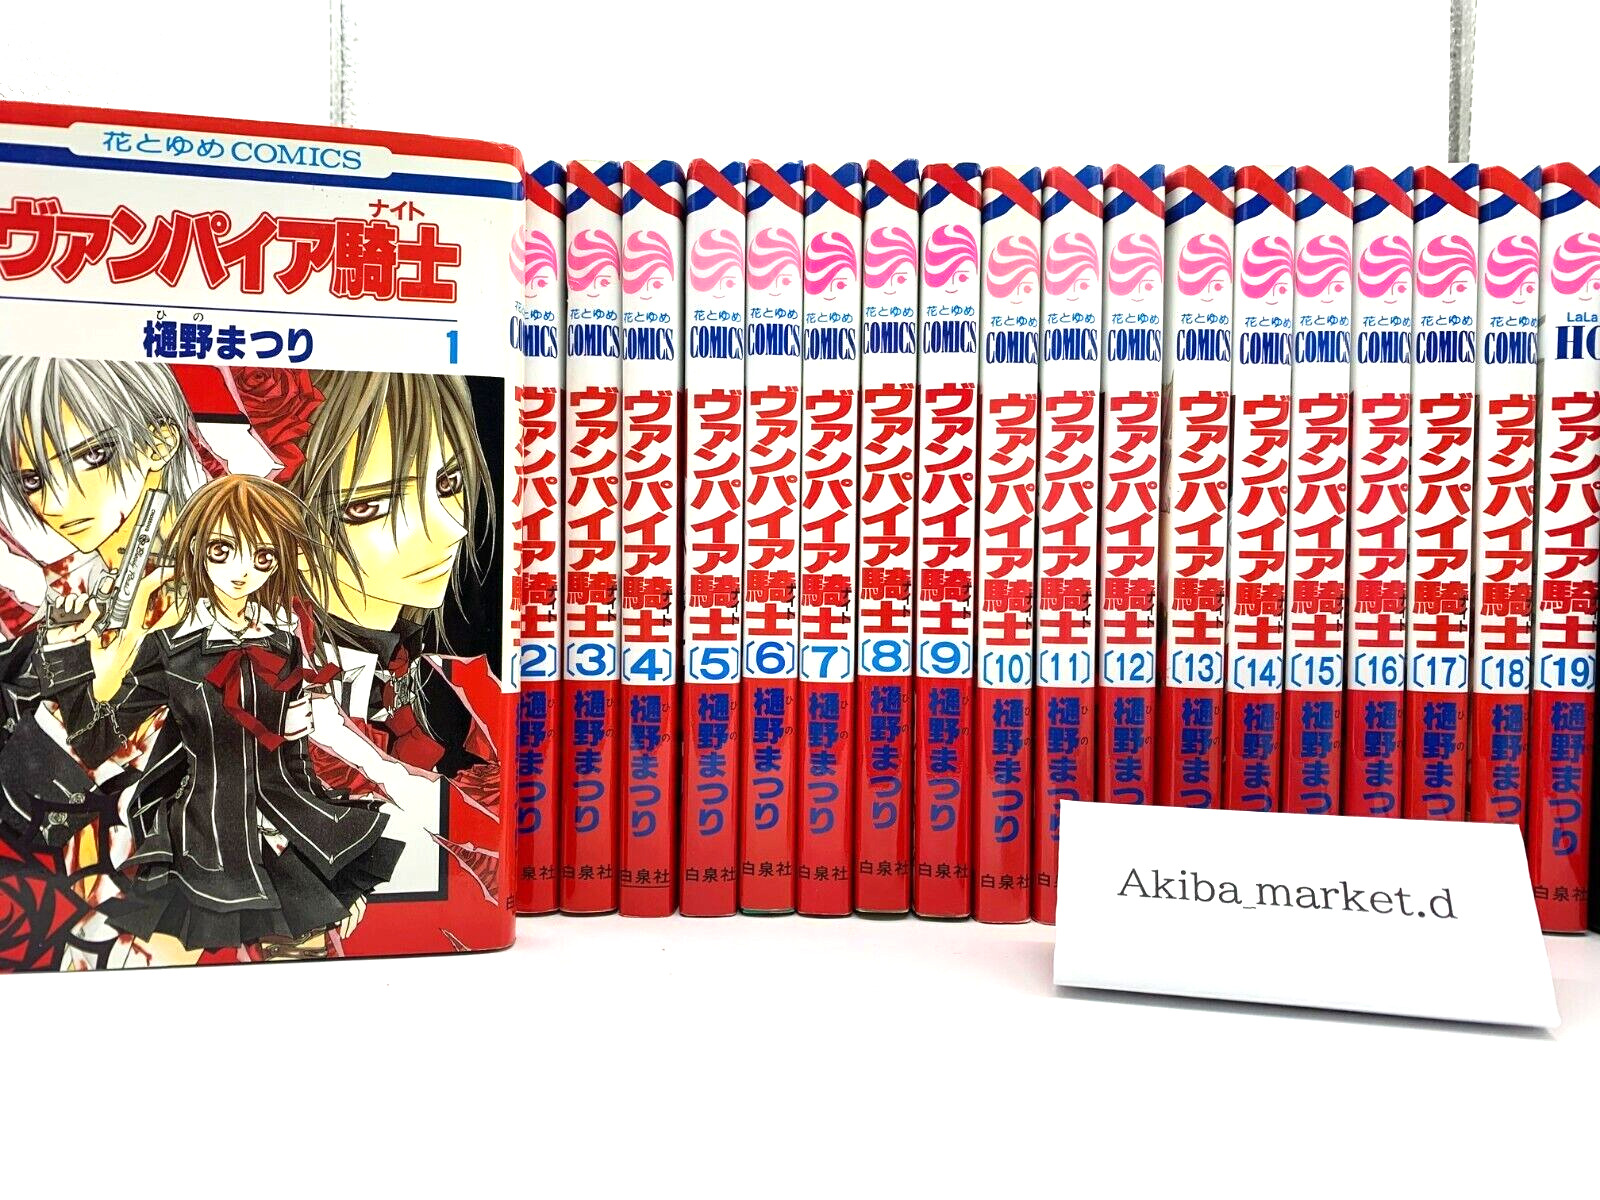 Vampire Knight Vol.1-19 Complete Full Set Japanese Manga Comics Hino Matsuri